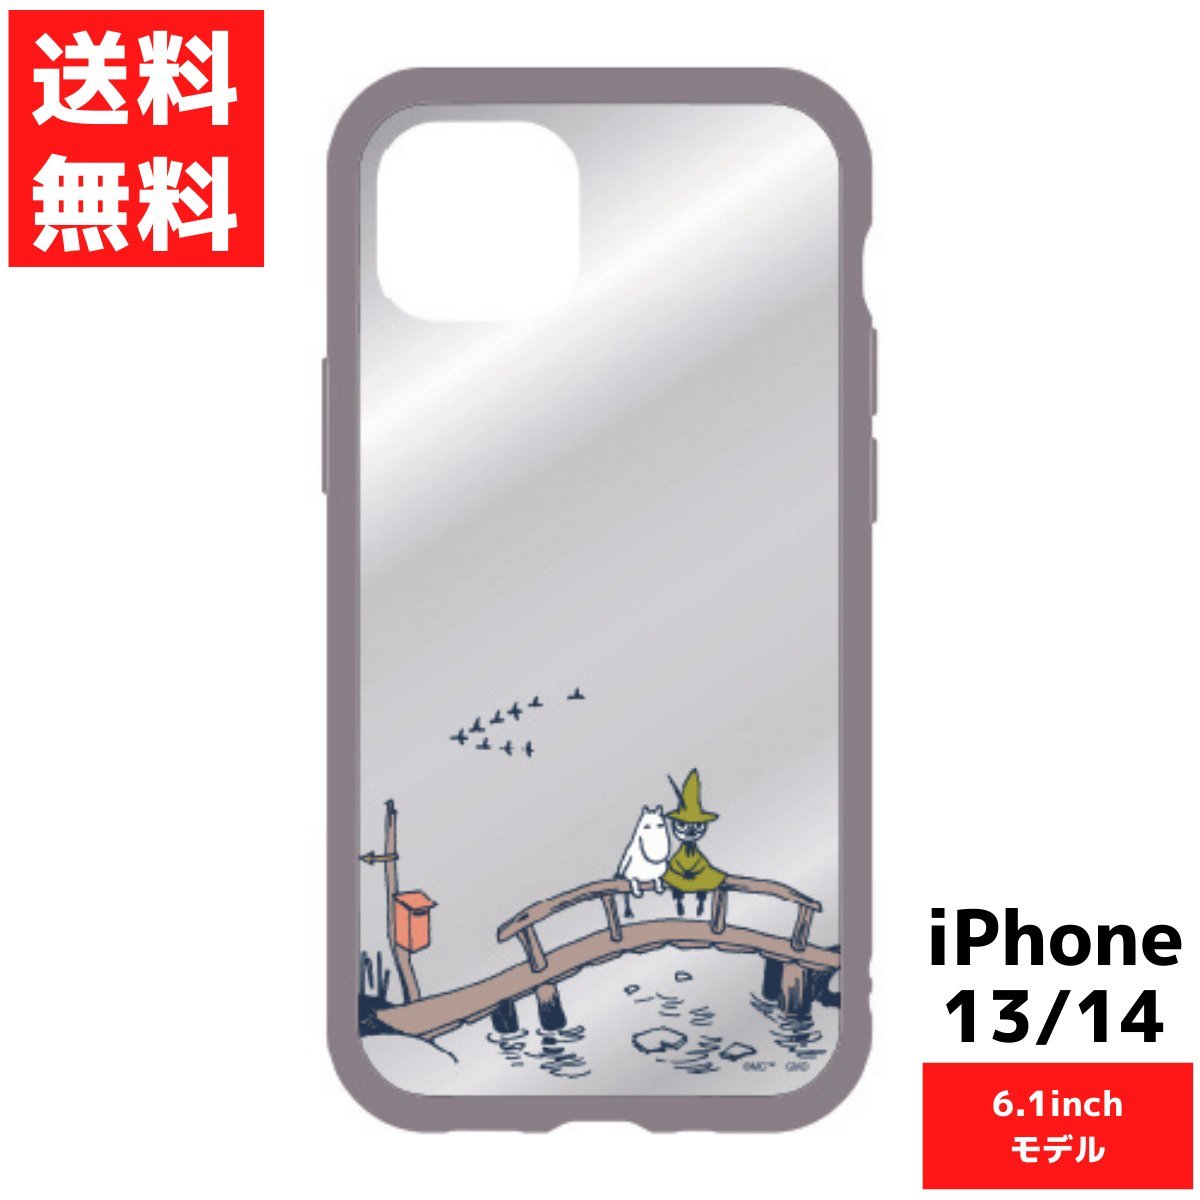 スナフキン ムーミン IIII fit Clear iPhone14 13対応ケース 6.1inch アイフォン スマホ カバー_画像1